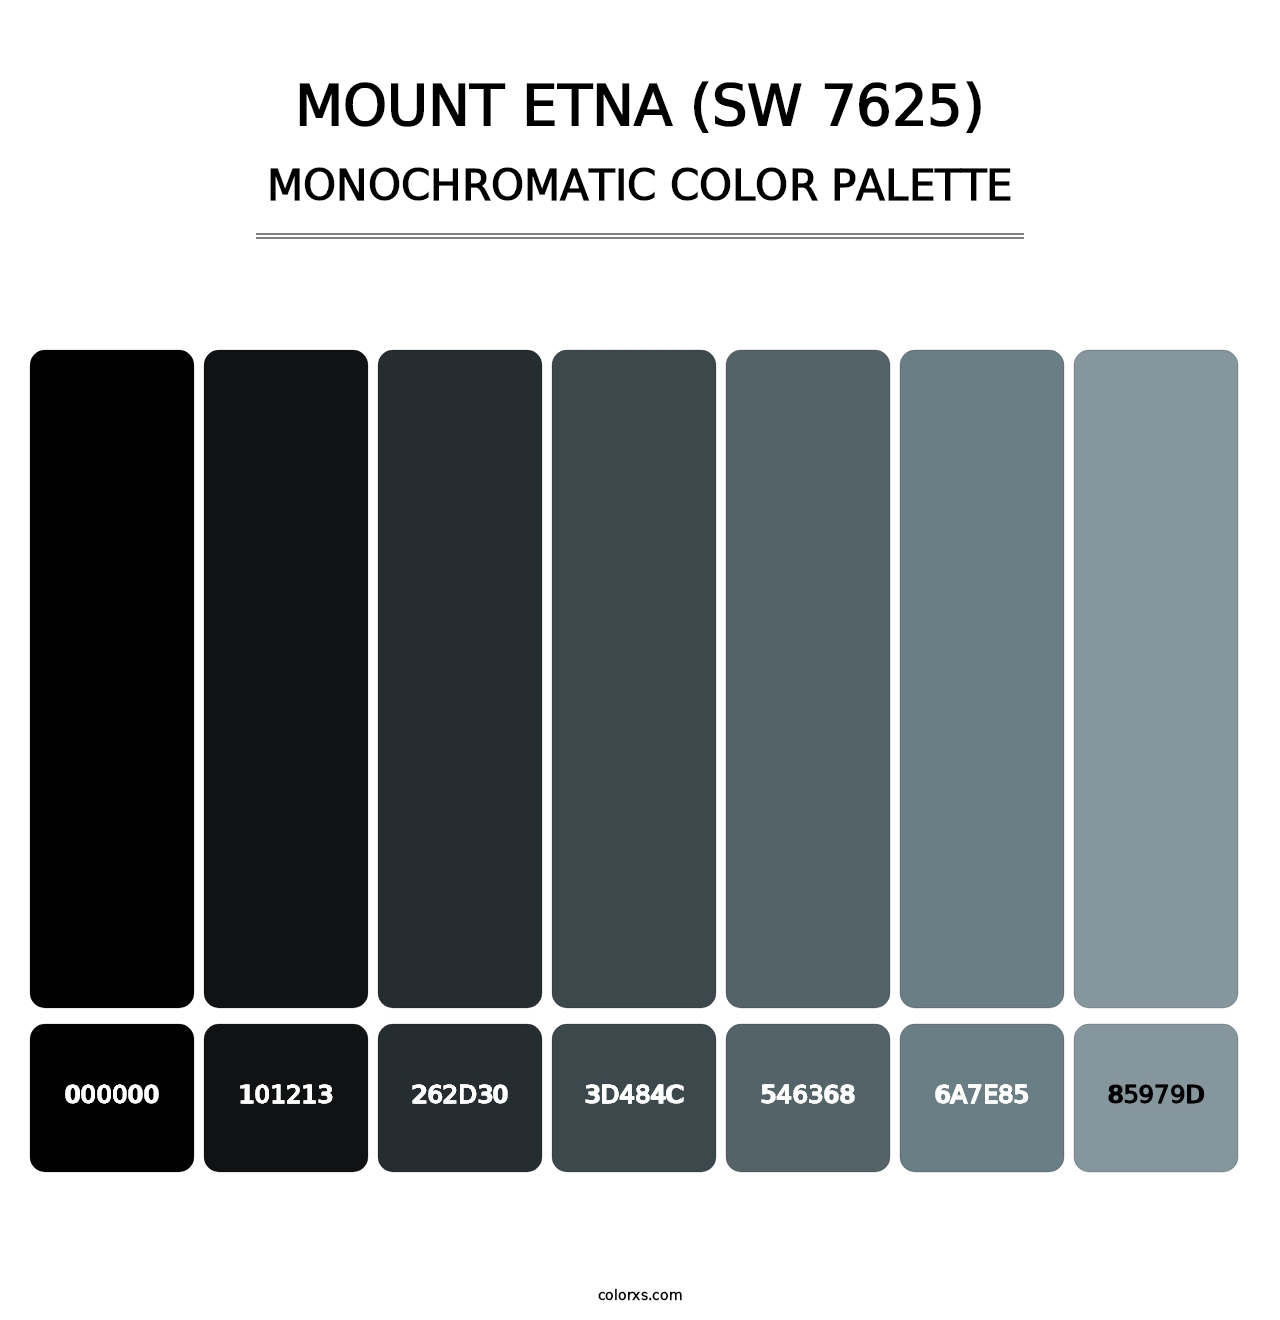 Mount Etna (SW 7625) - Monochromatic Color Palette